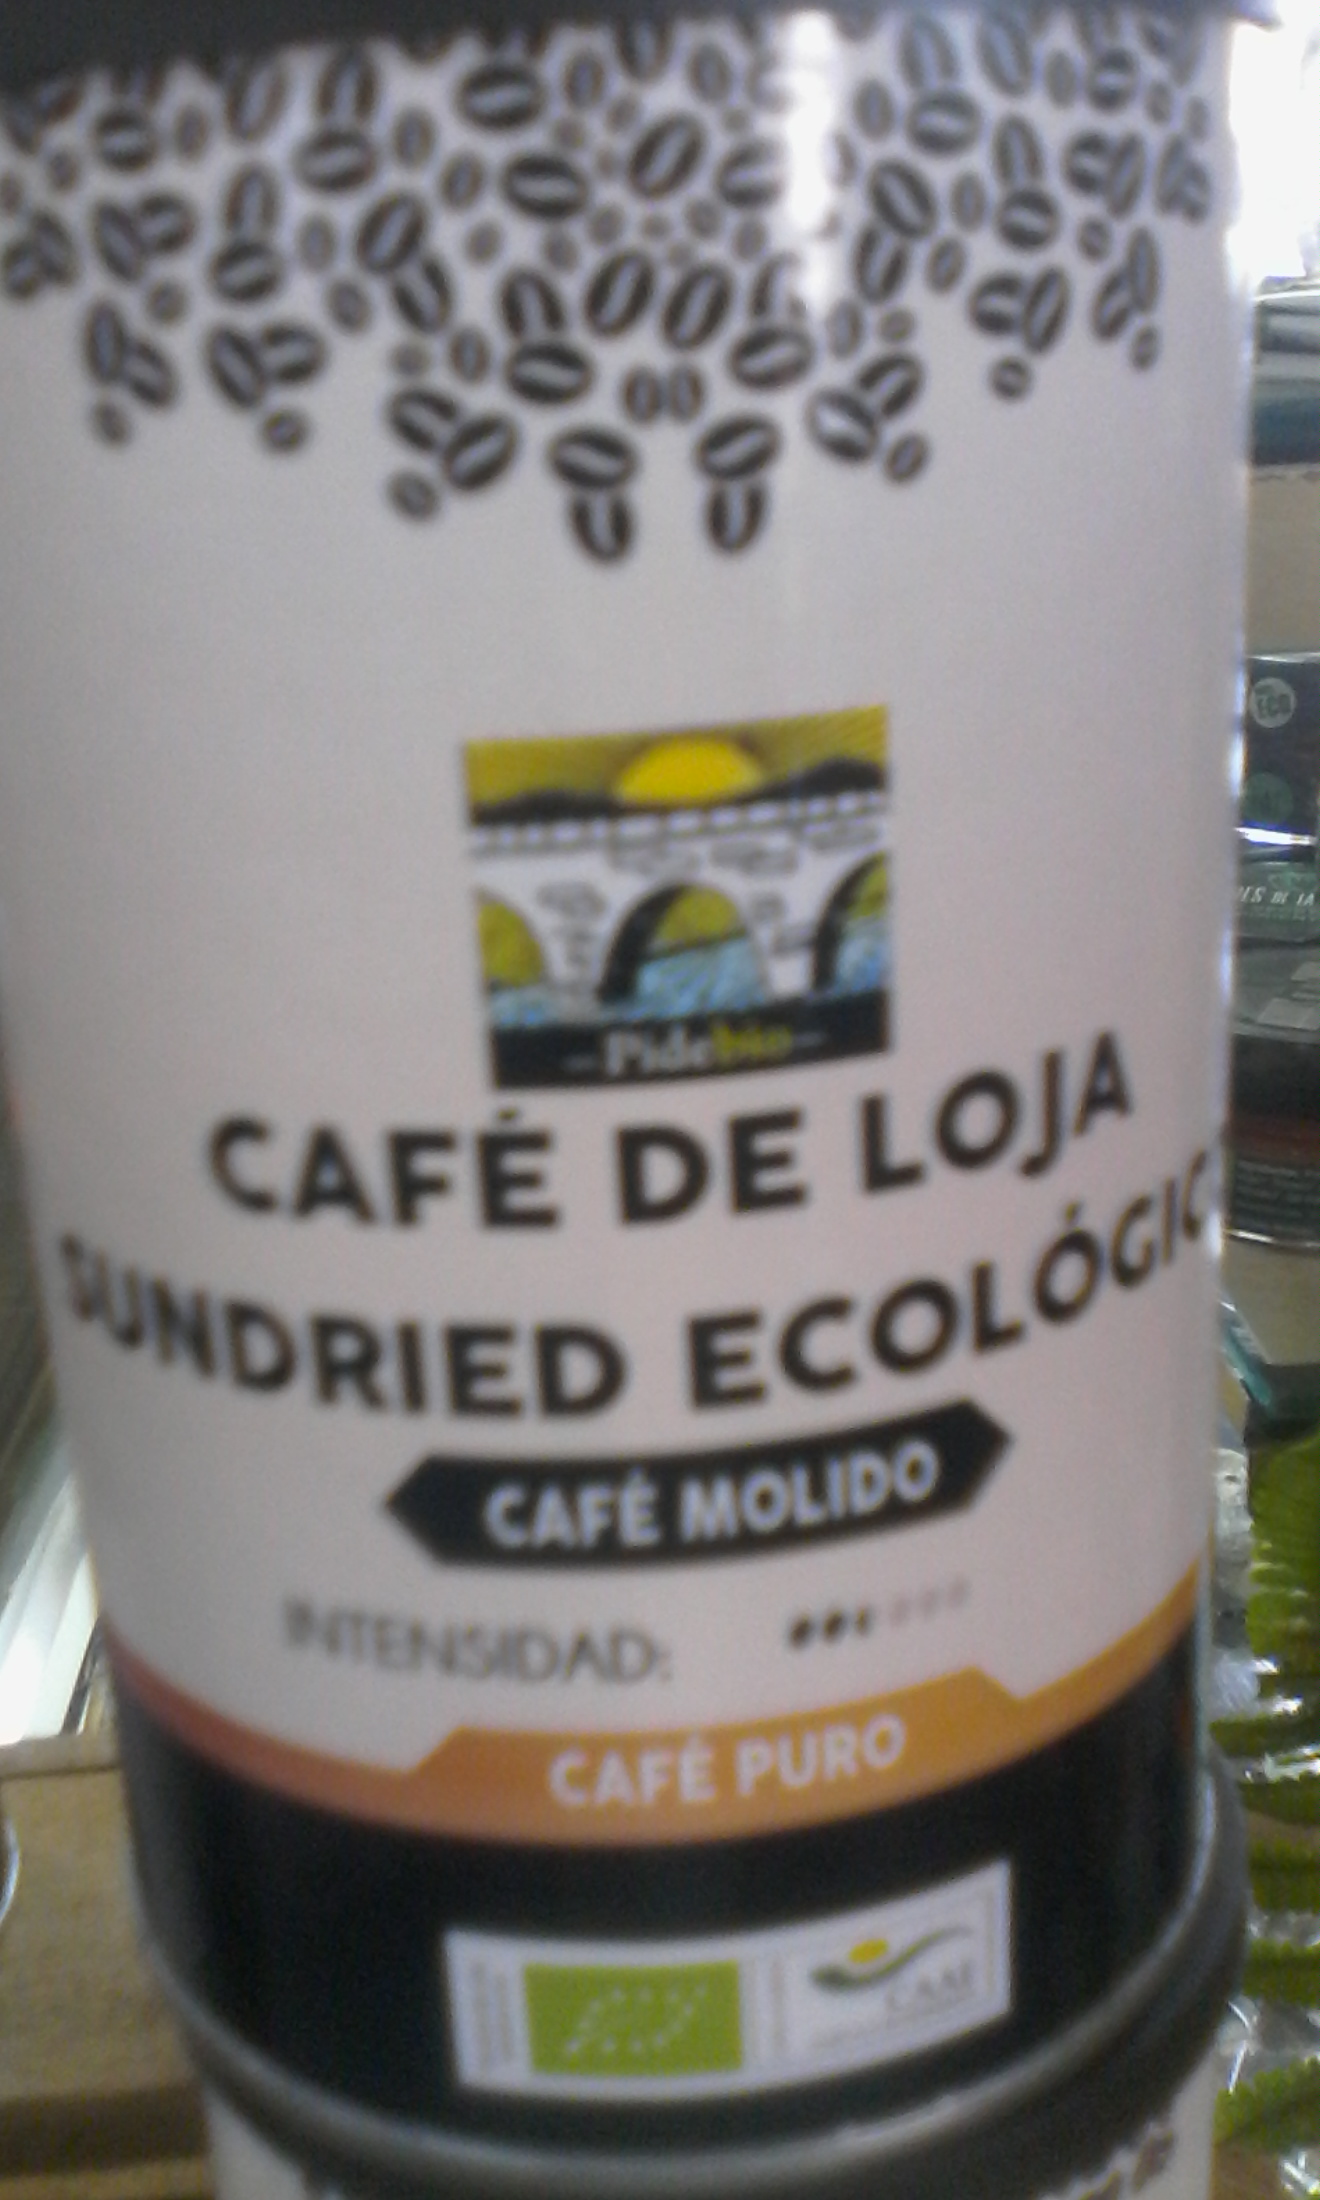 Café de loja  molido ecológico 